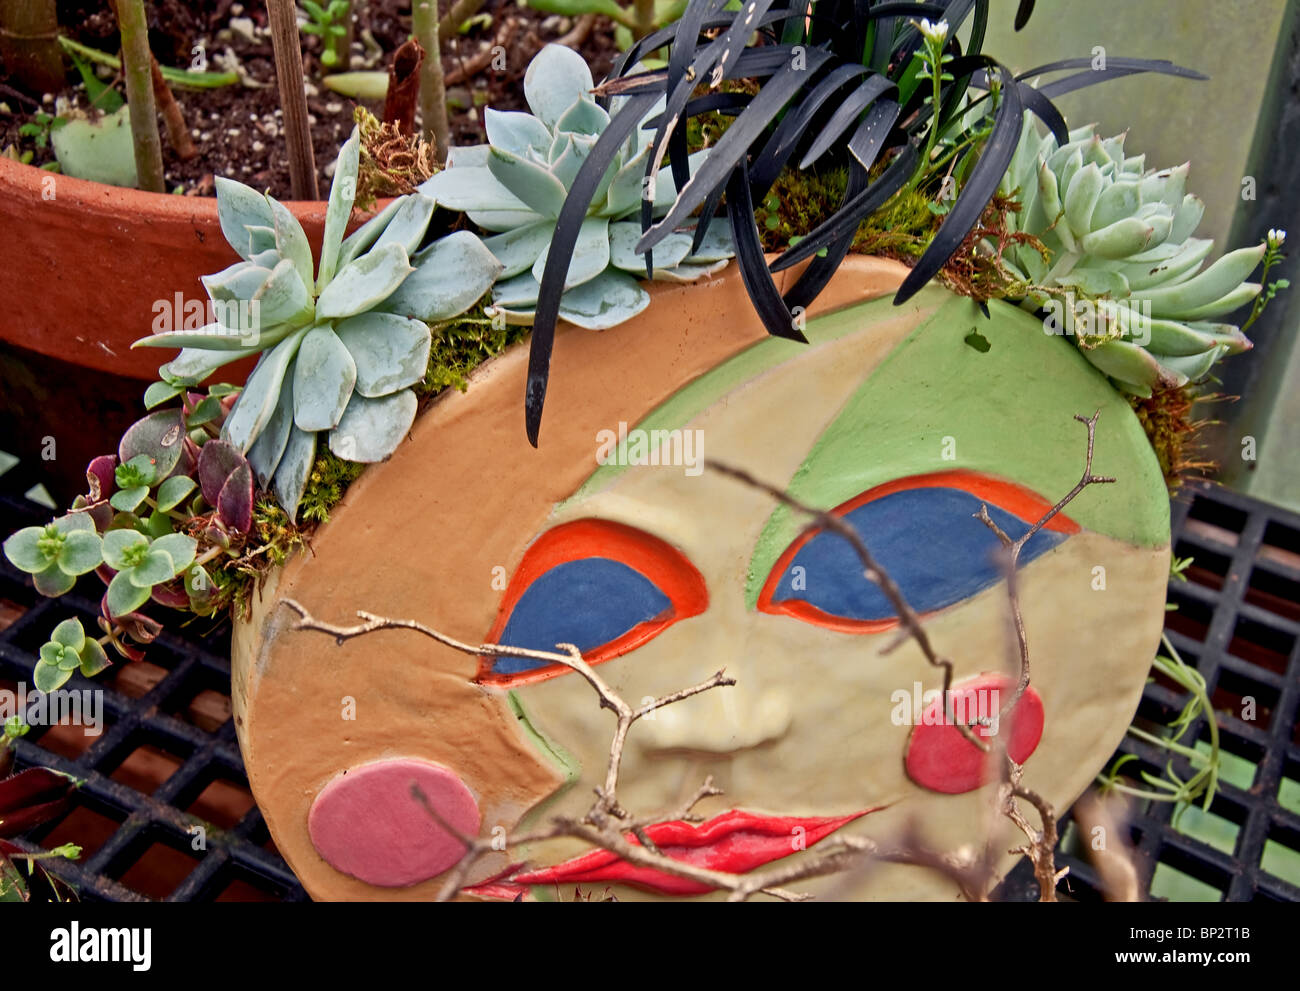 Beau pot en argile à la main est faite dans un visage soleil/lune et a un superbe arrangement de plantes avec diverses plantes grasses. Banque D'Images